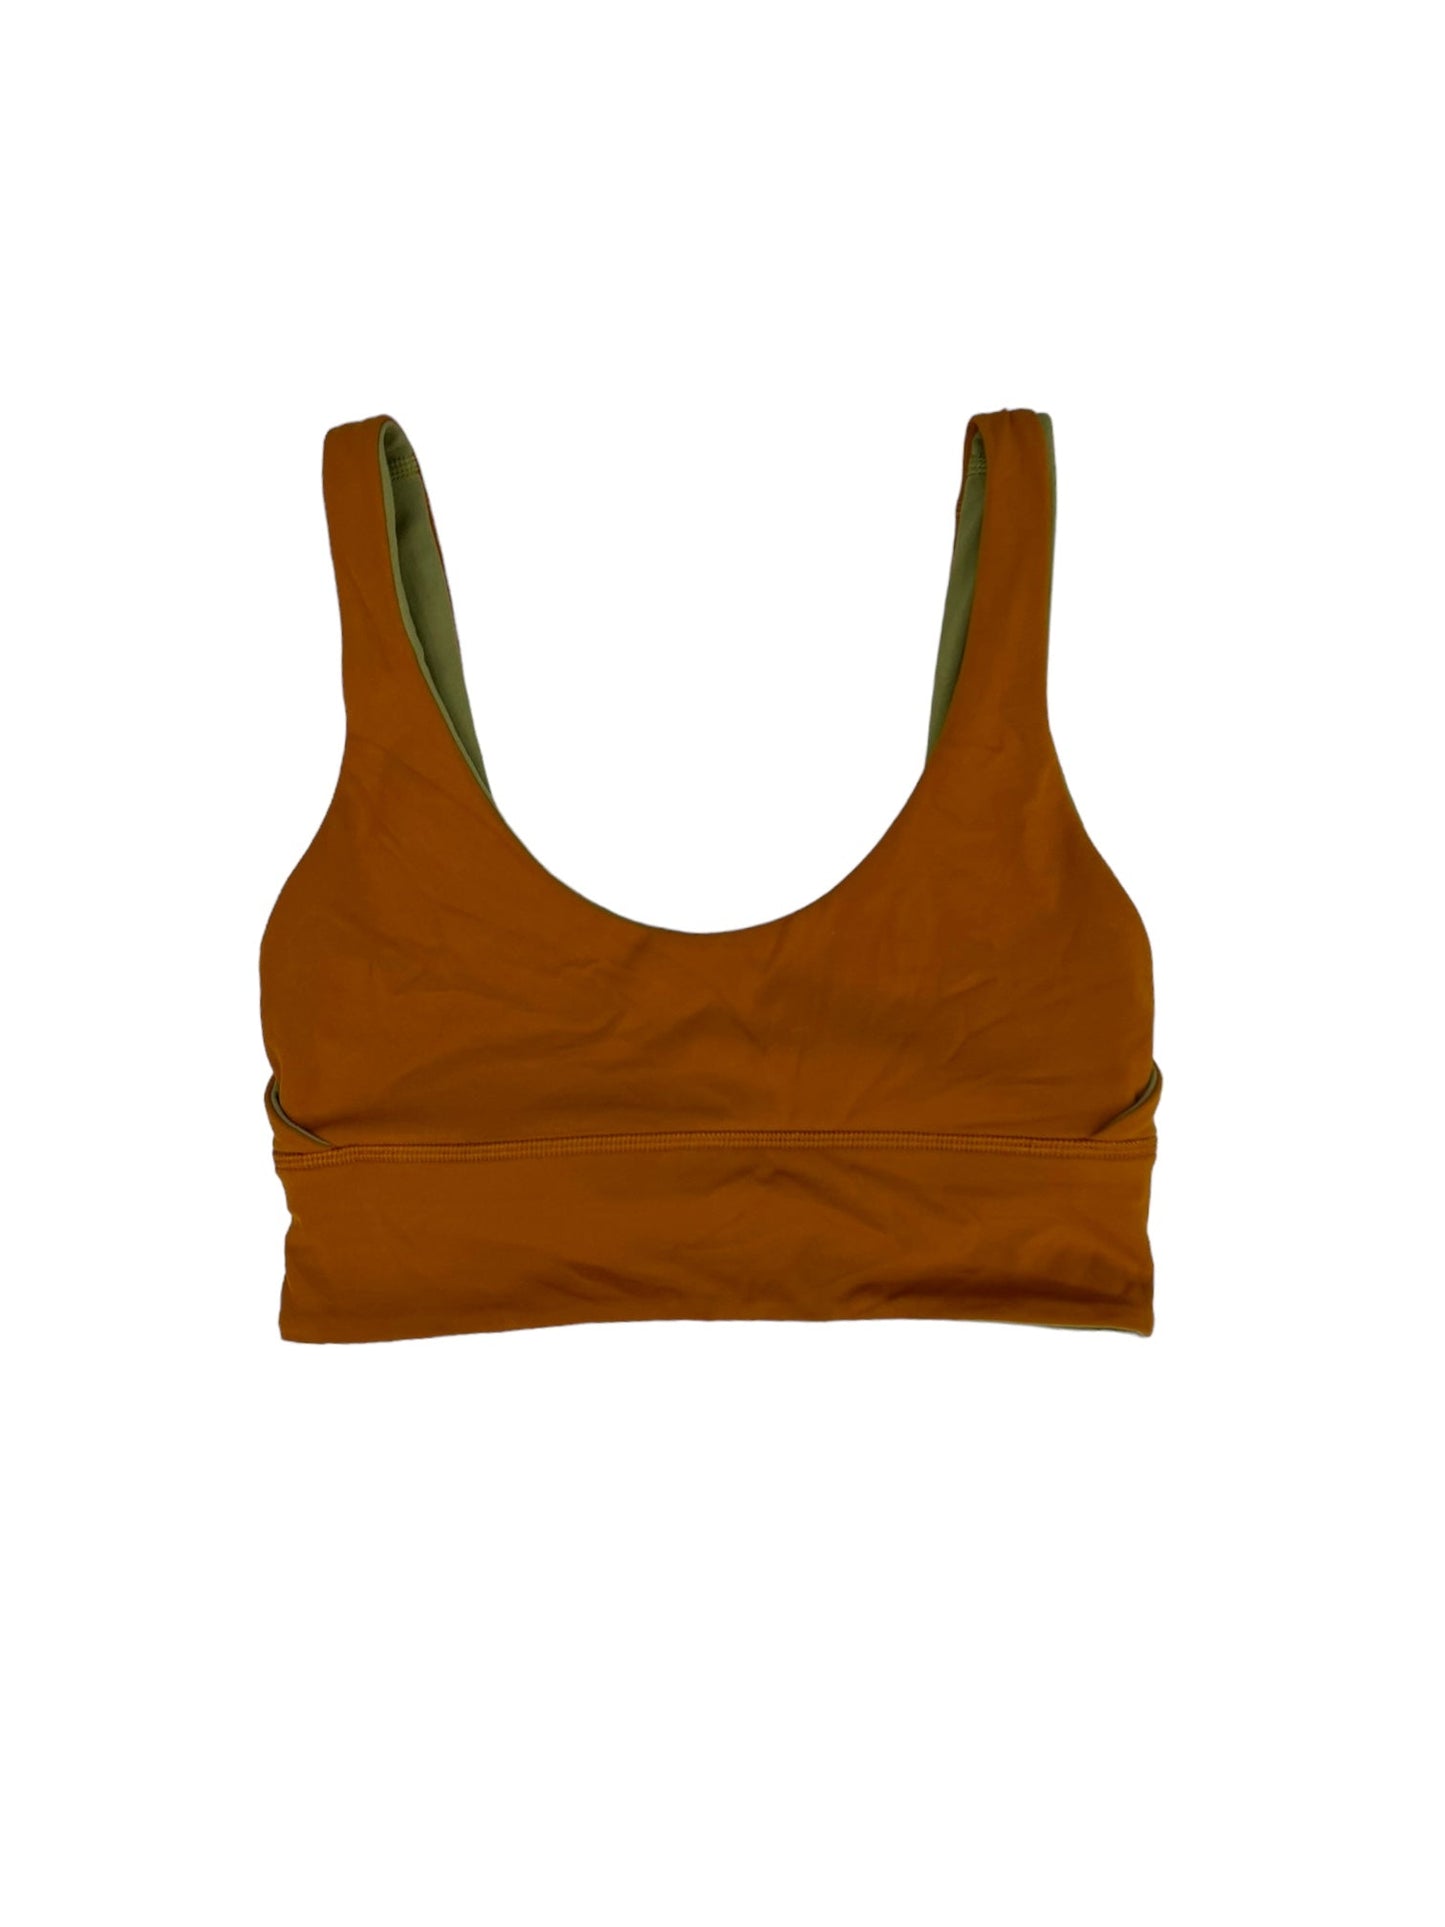 Green & Orange Athletic Bra Lululemon, Size 4